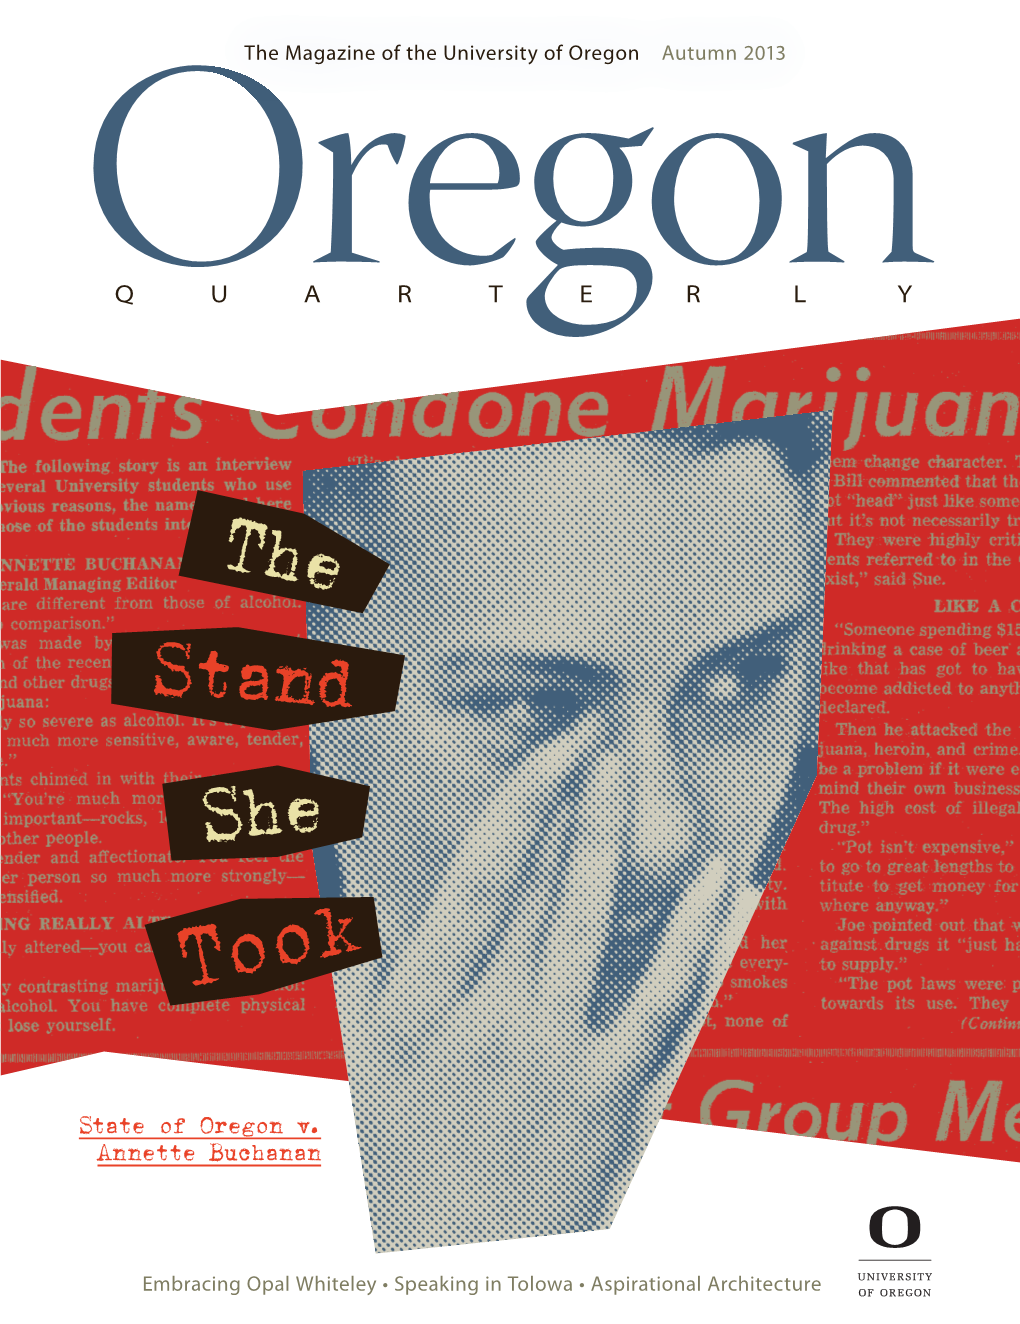 State of Oregon V. Annette Buchanan